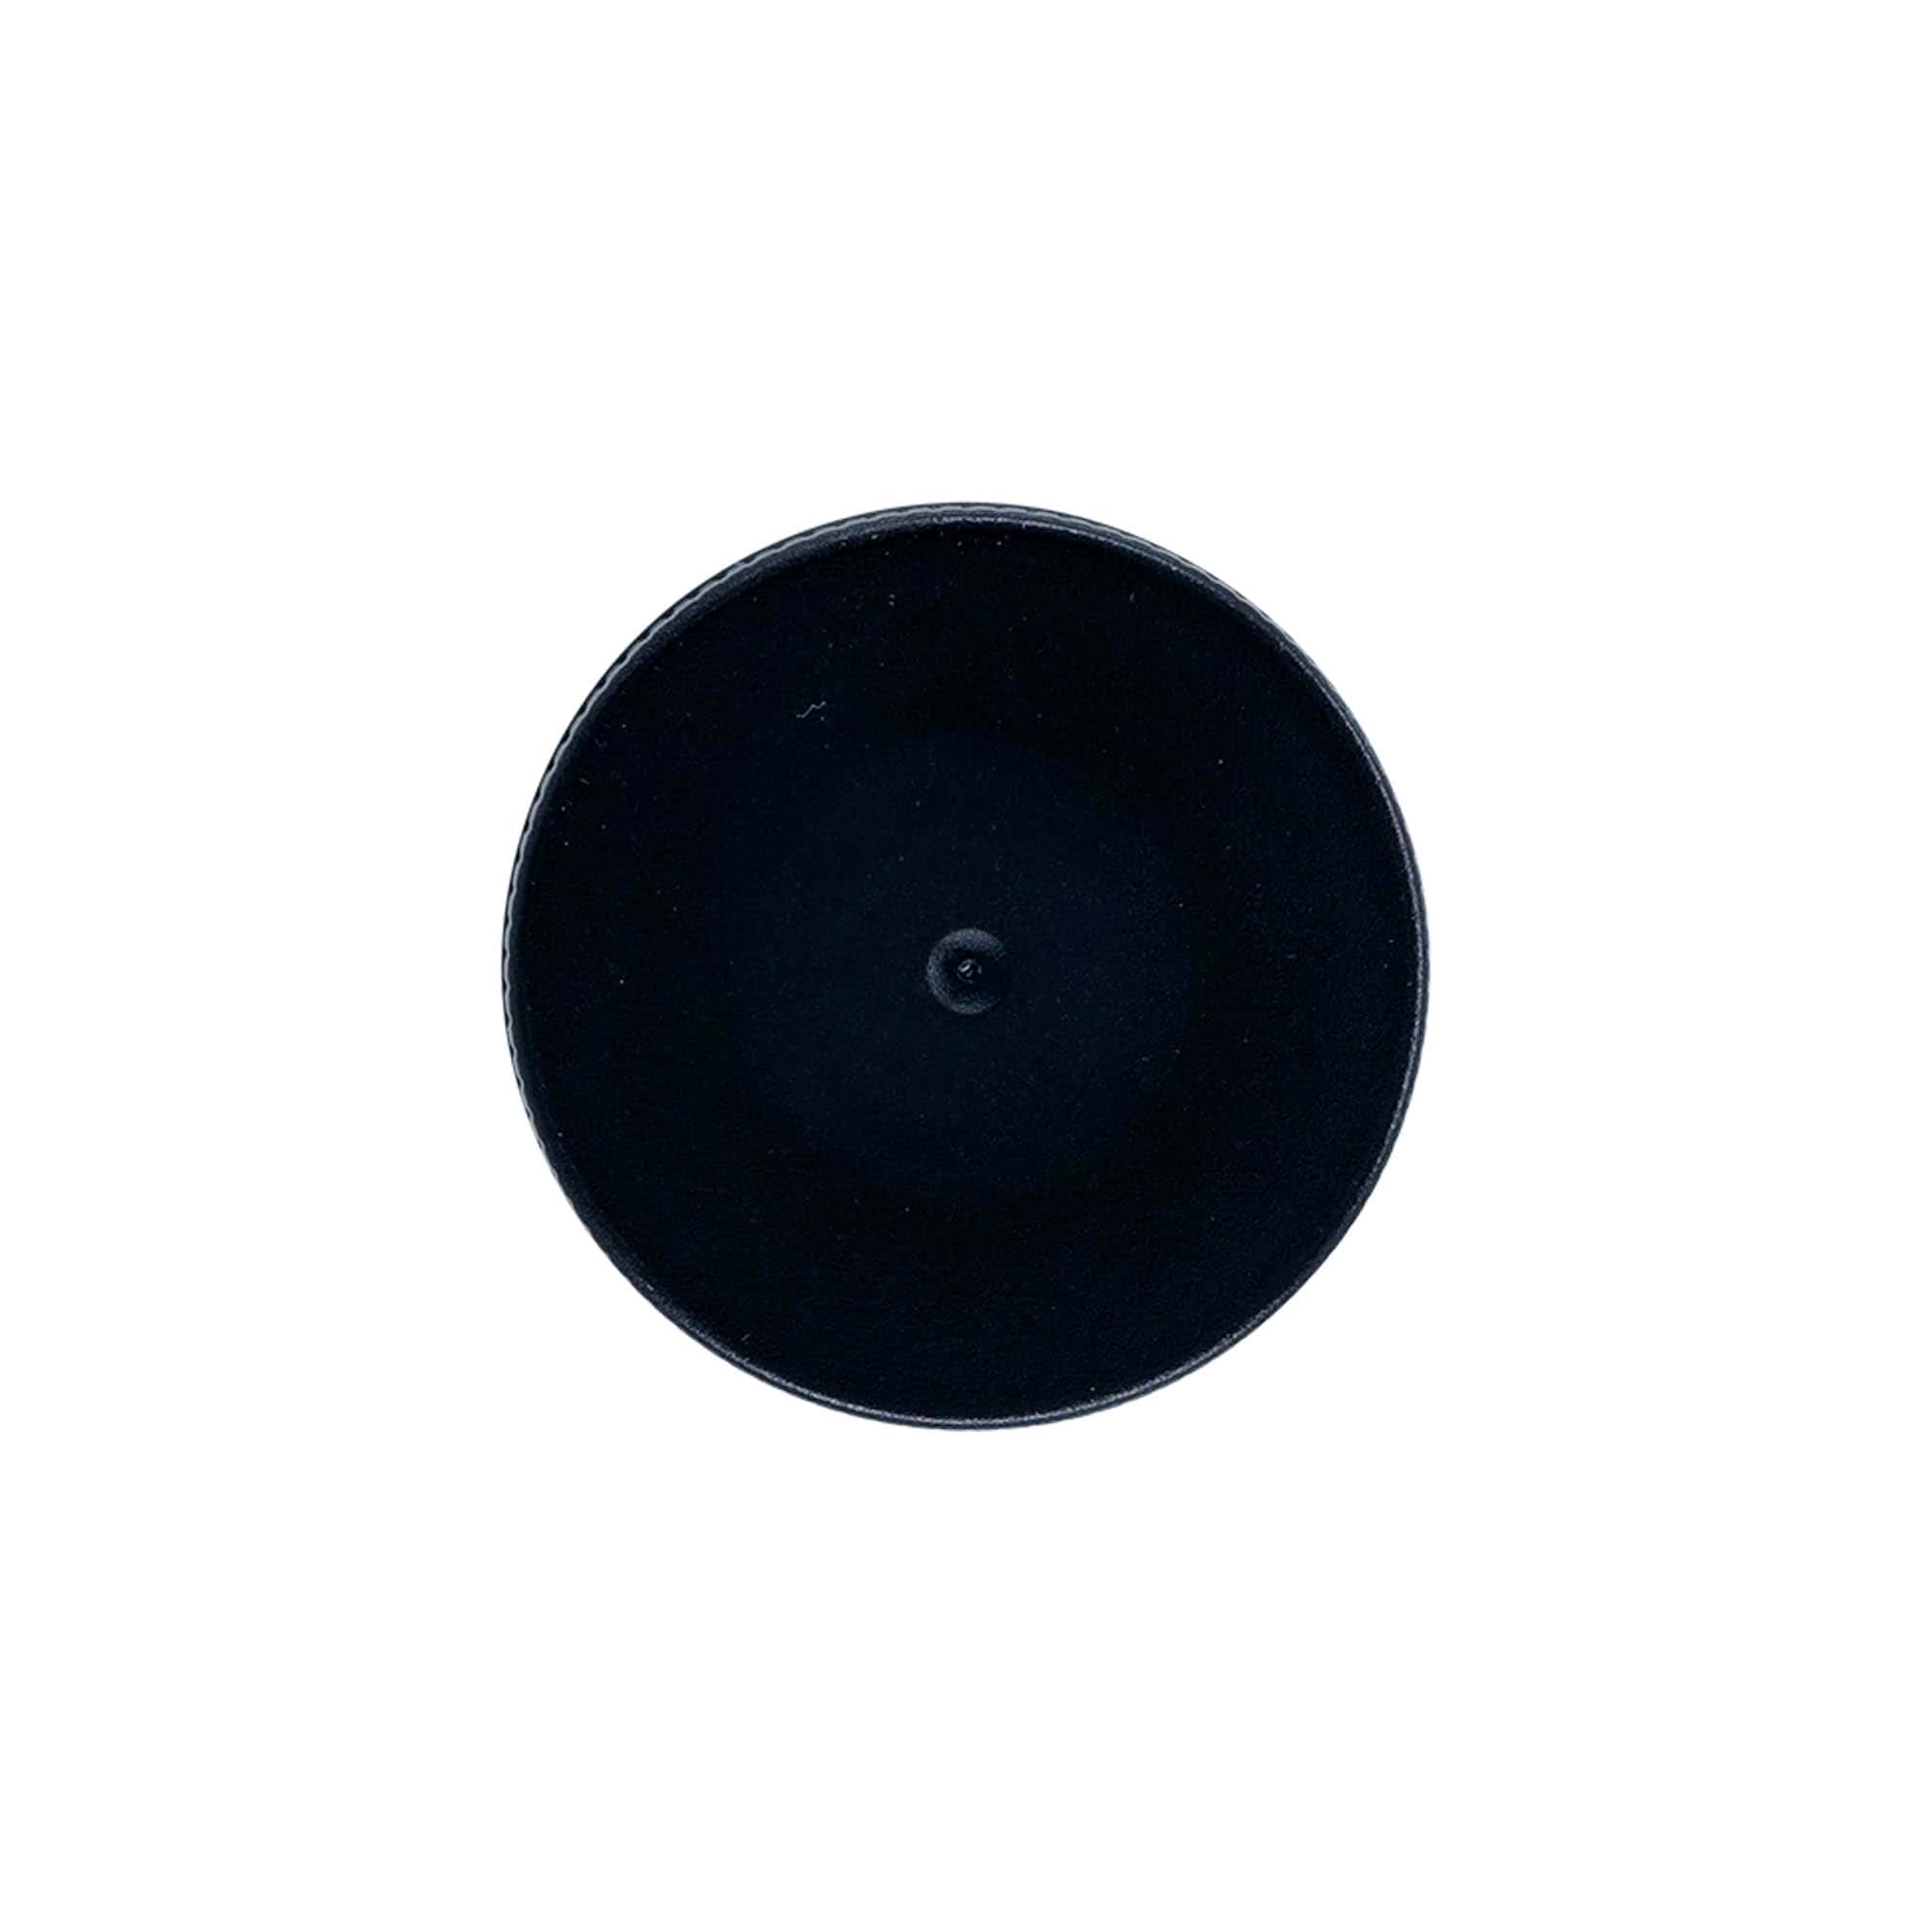 Zakrętka z wkładką EPE, tworzywo sztuczne PP, kolor czarny, do zamknięcia: DIN 40